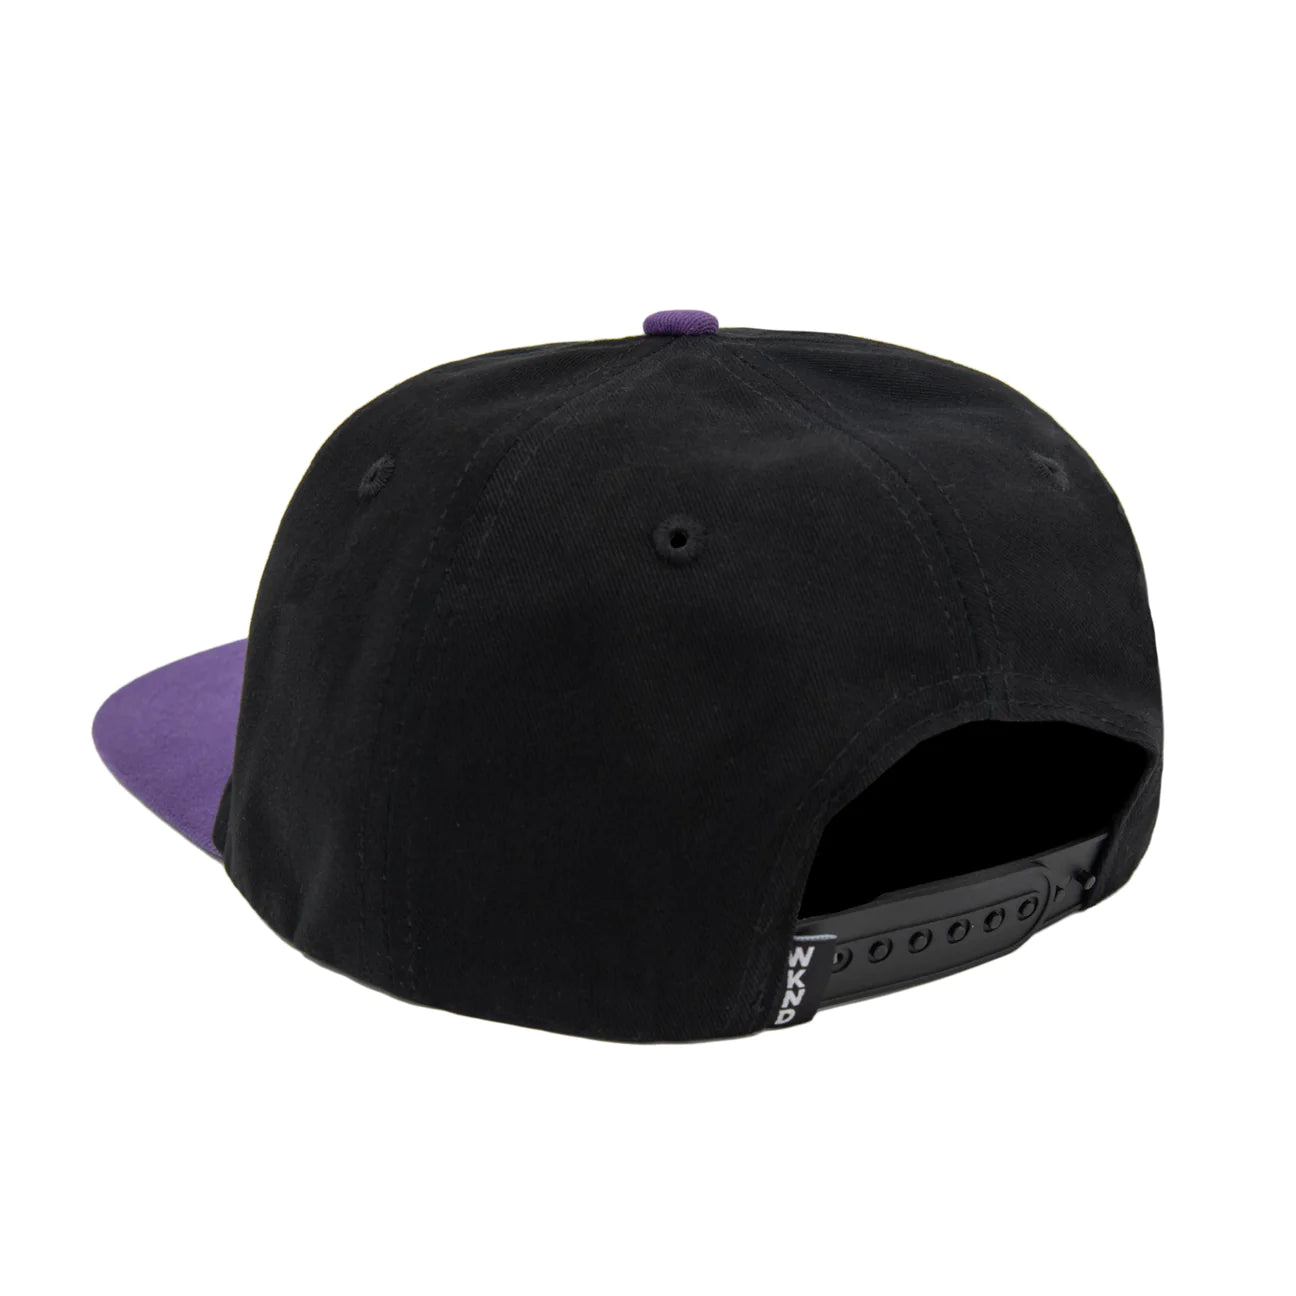 WKND Evo Fish Hat - Black/Purple